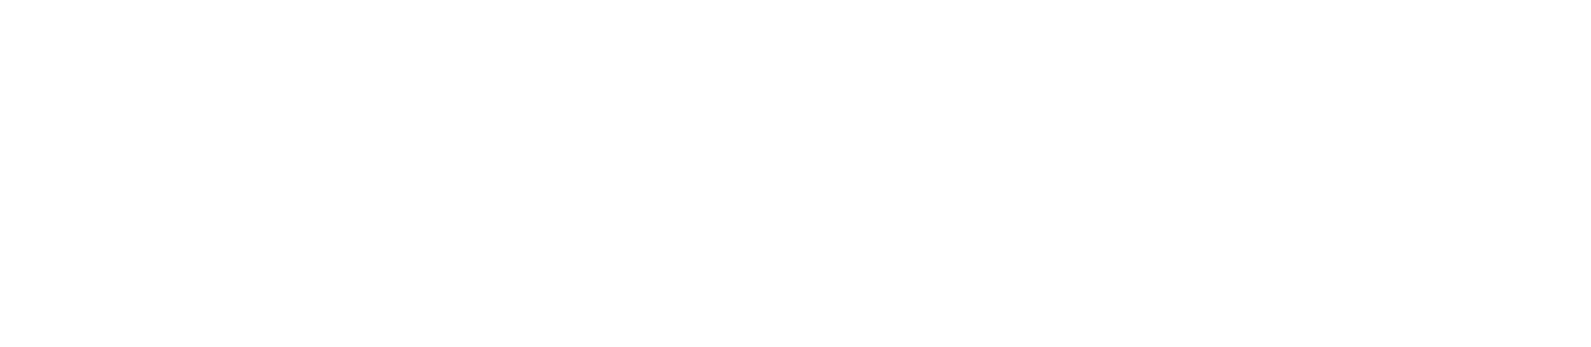 Veracyte logo grand pour les fonds sombres (PNG transparent)